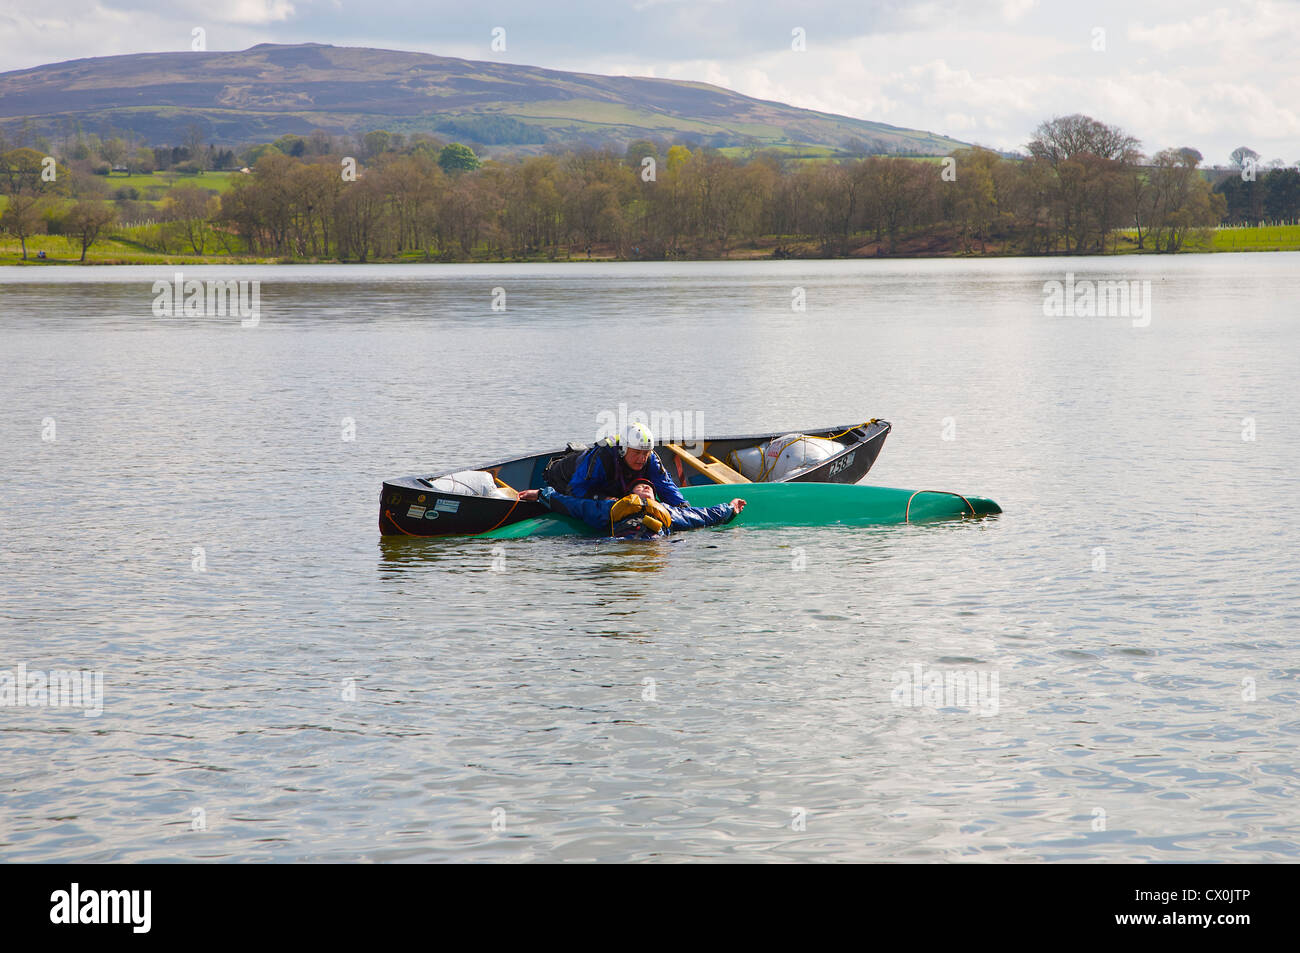 Kanu Rettung Praxis Mann Unfall in kanadisches Kanu zu heben. Talkin Tarn in der Nähe von Brampton, Cumbria, England Stockfoto